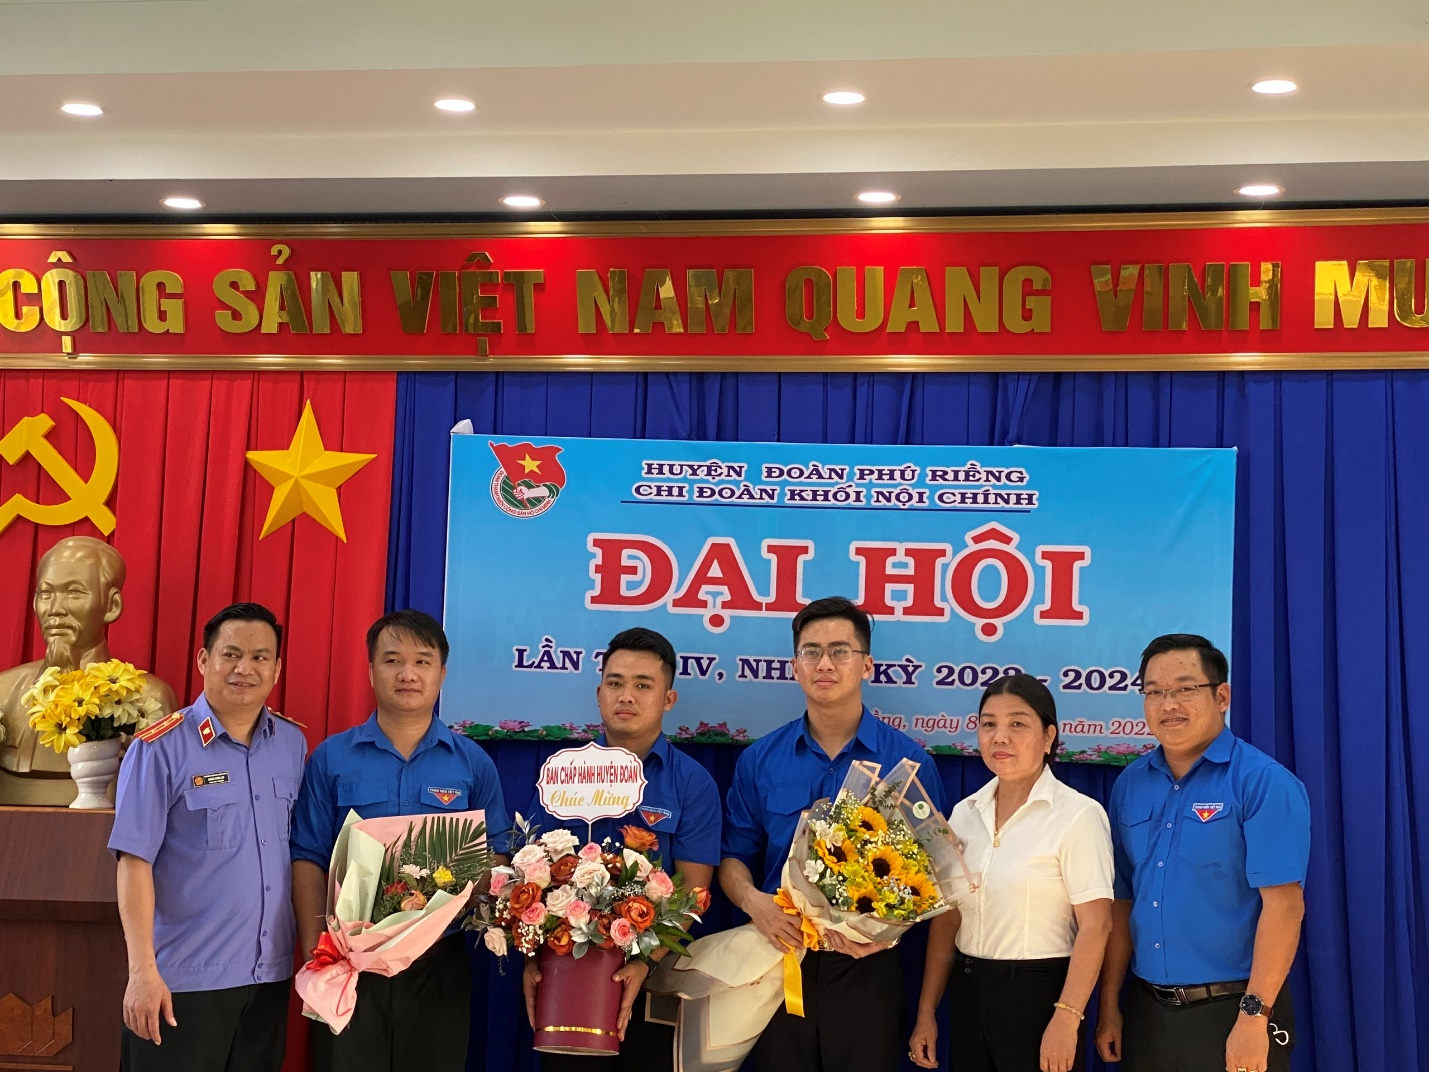 Chi đoàn khối Nội chính huyện Phú Riềng tổ chức thành công  Đại hội Chi đoàn nhiệm kỳ 2022-2024